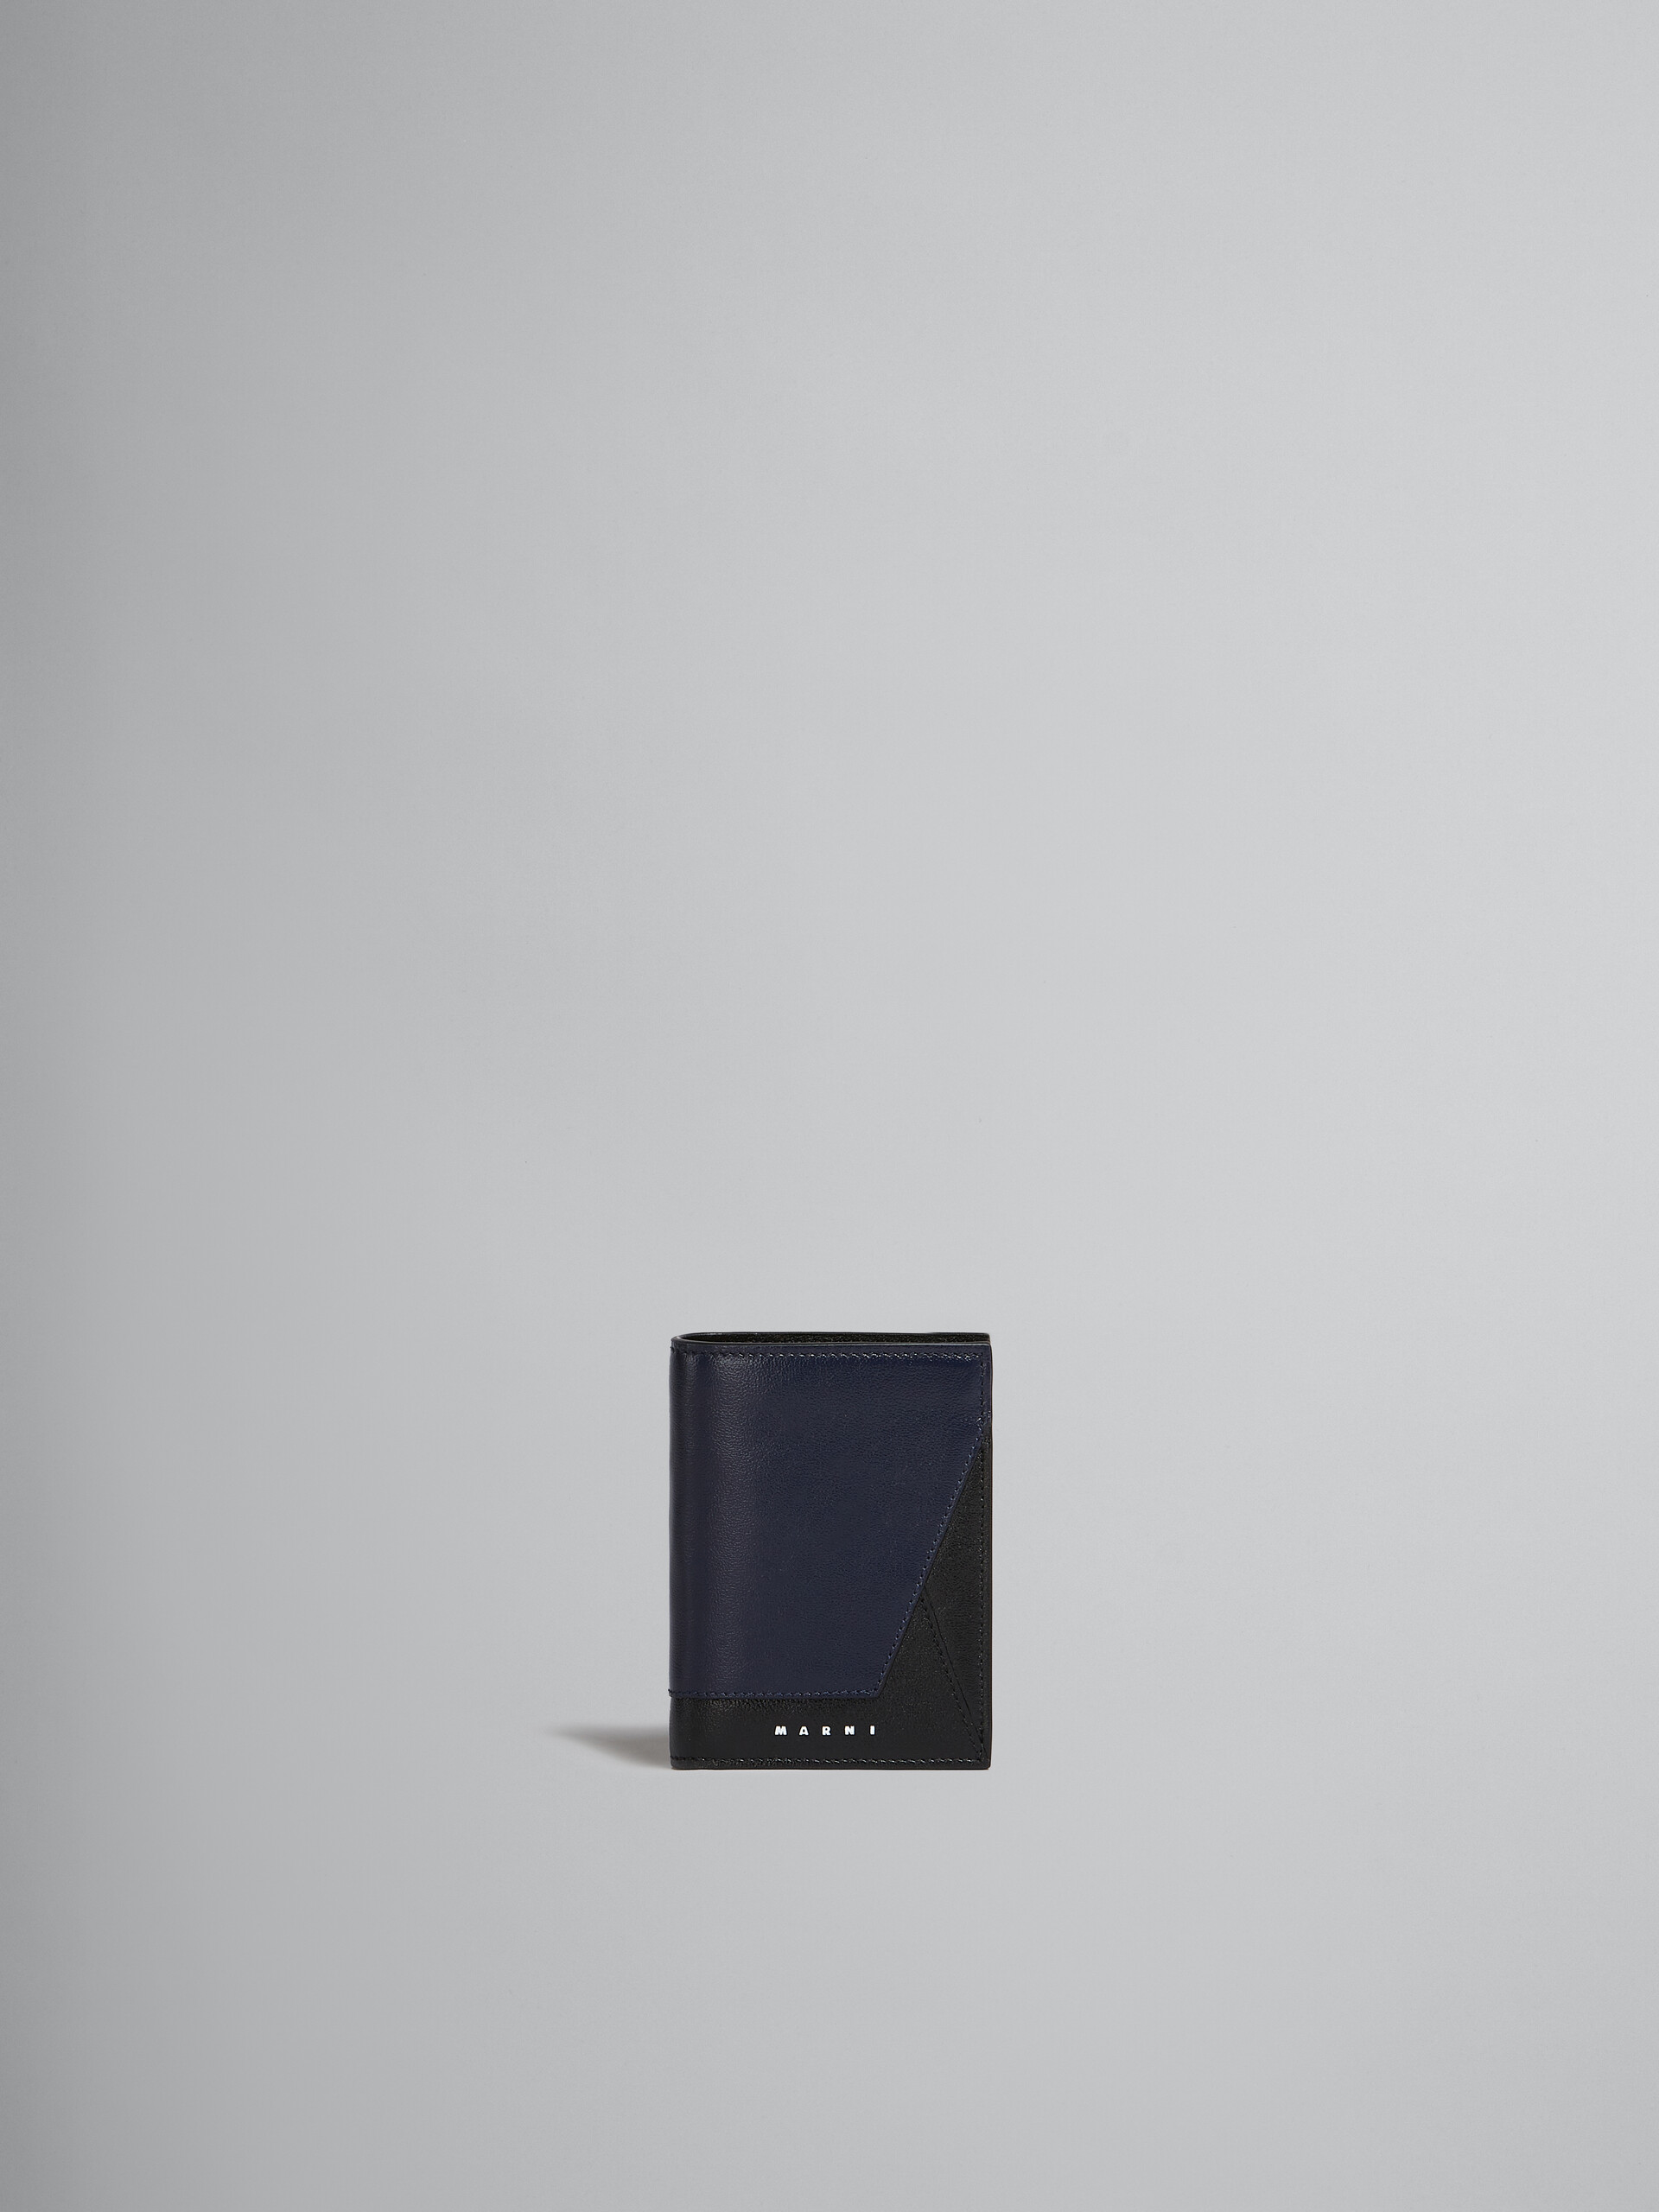 Zweifache Faltbrieftasche aus Leder in Marineblau und Schwarz - Brieftaschen - Image 1